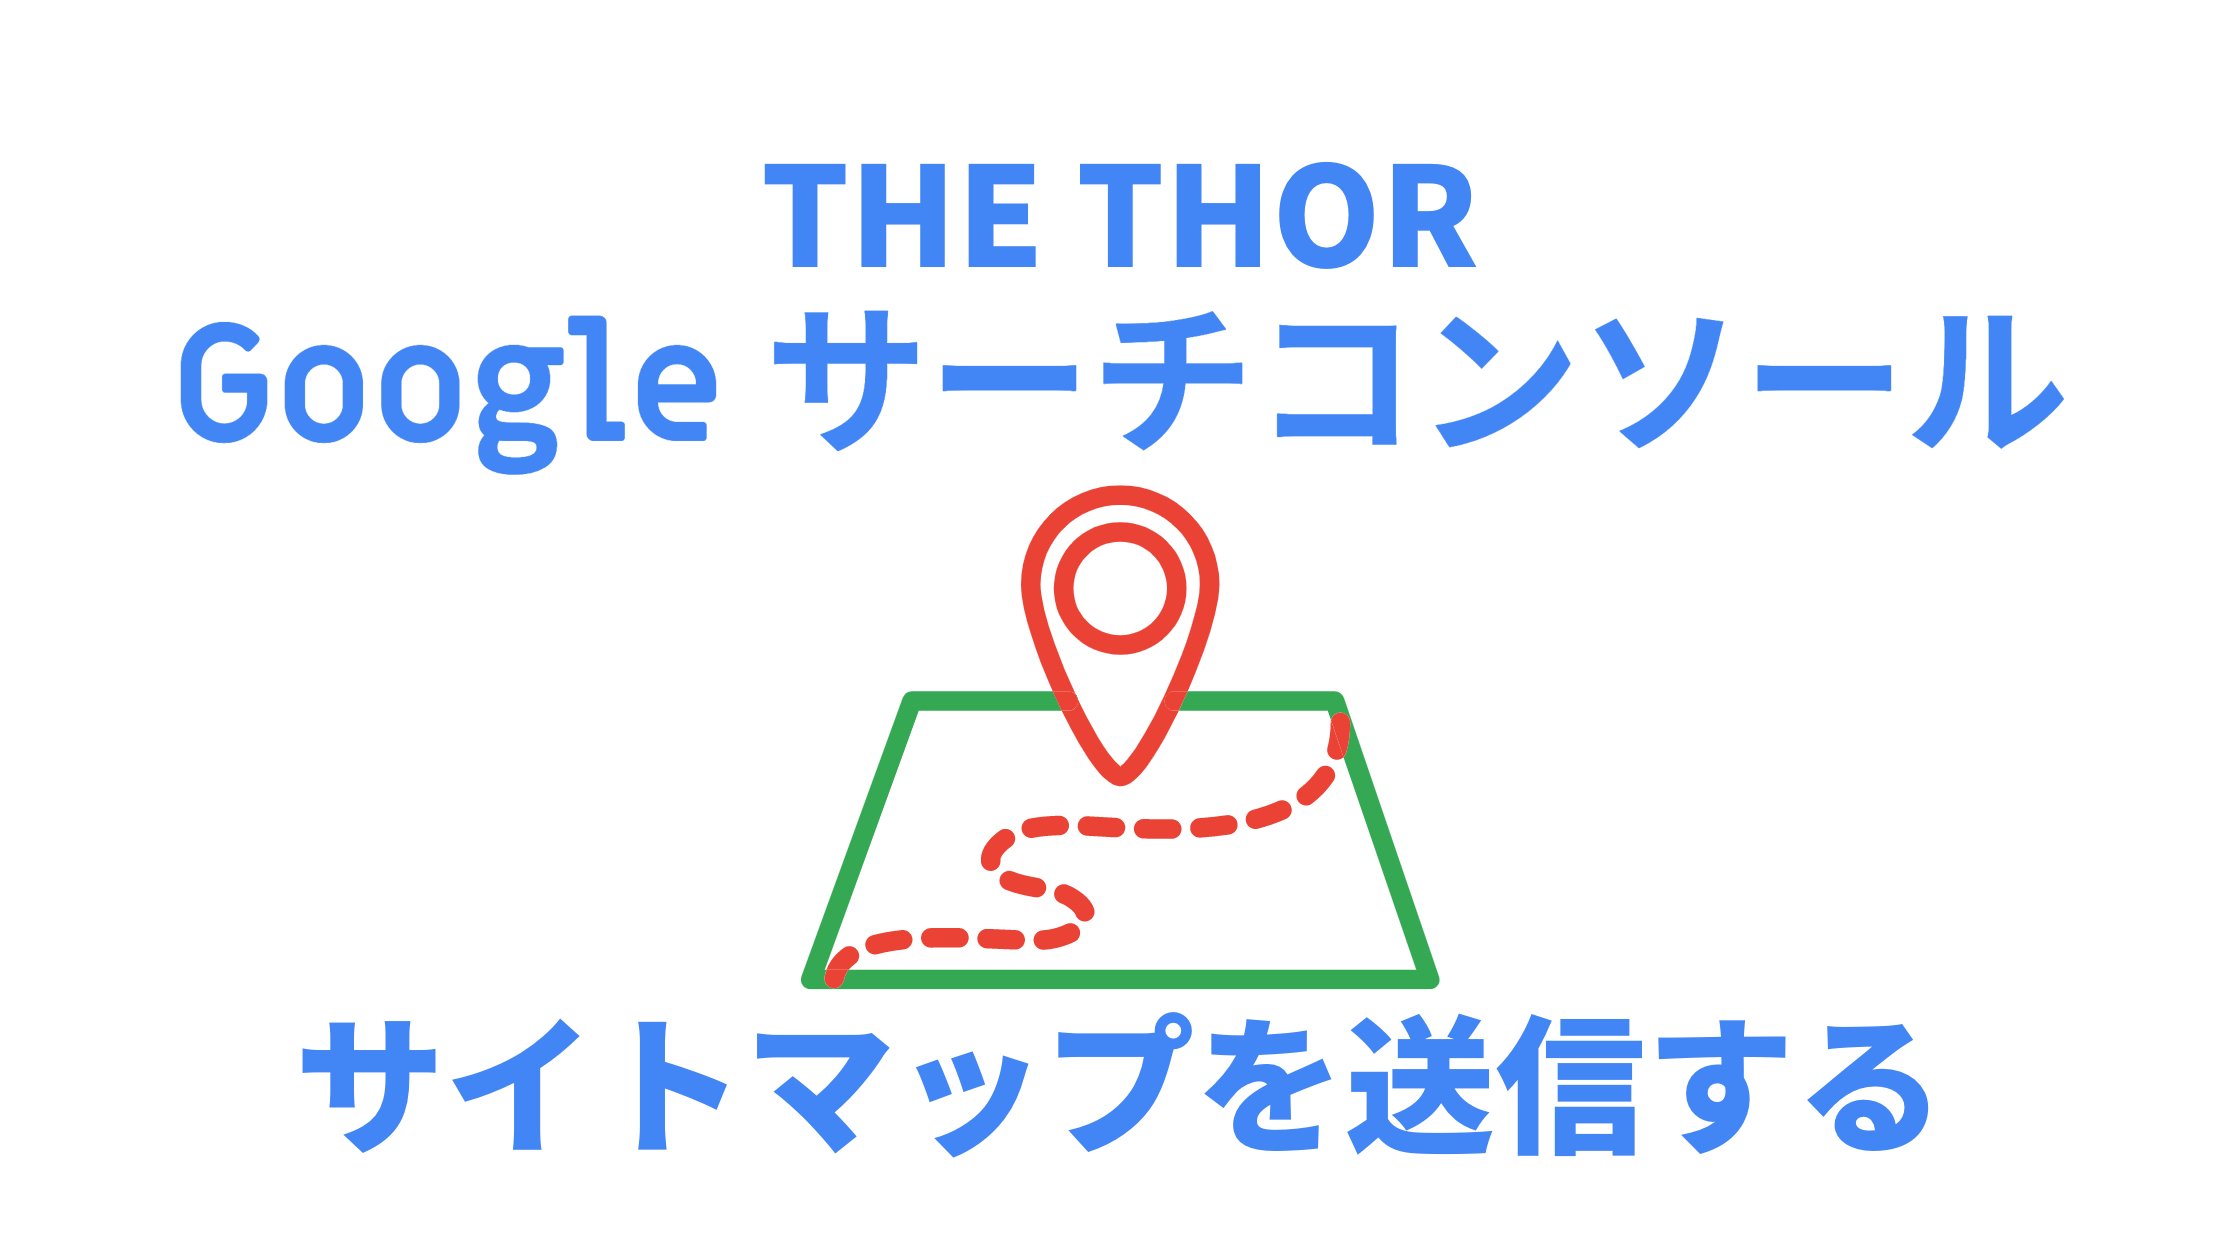 THE THOR→サーチコンソールにサイトマップを送信する